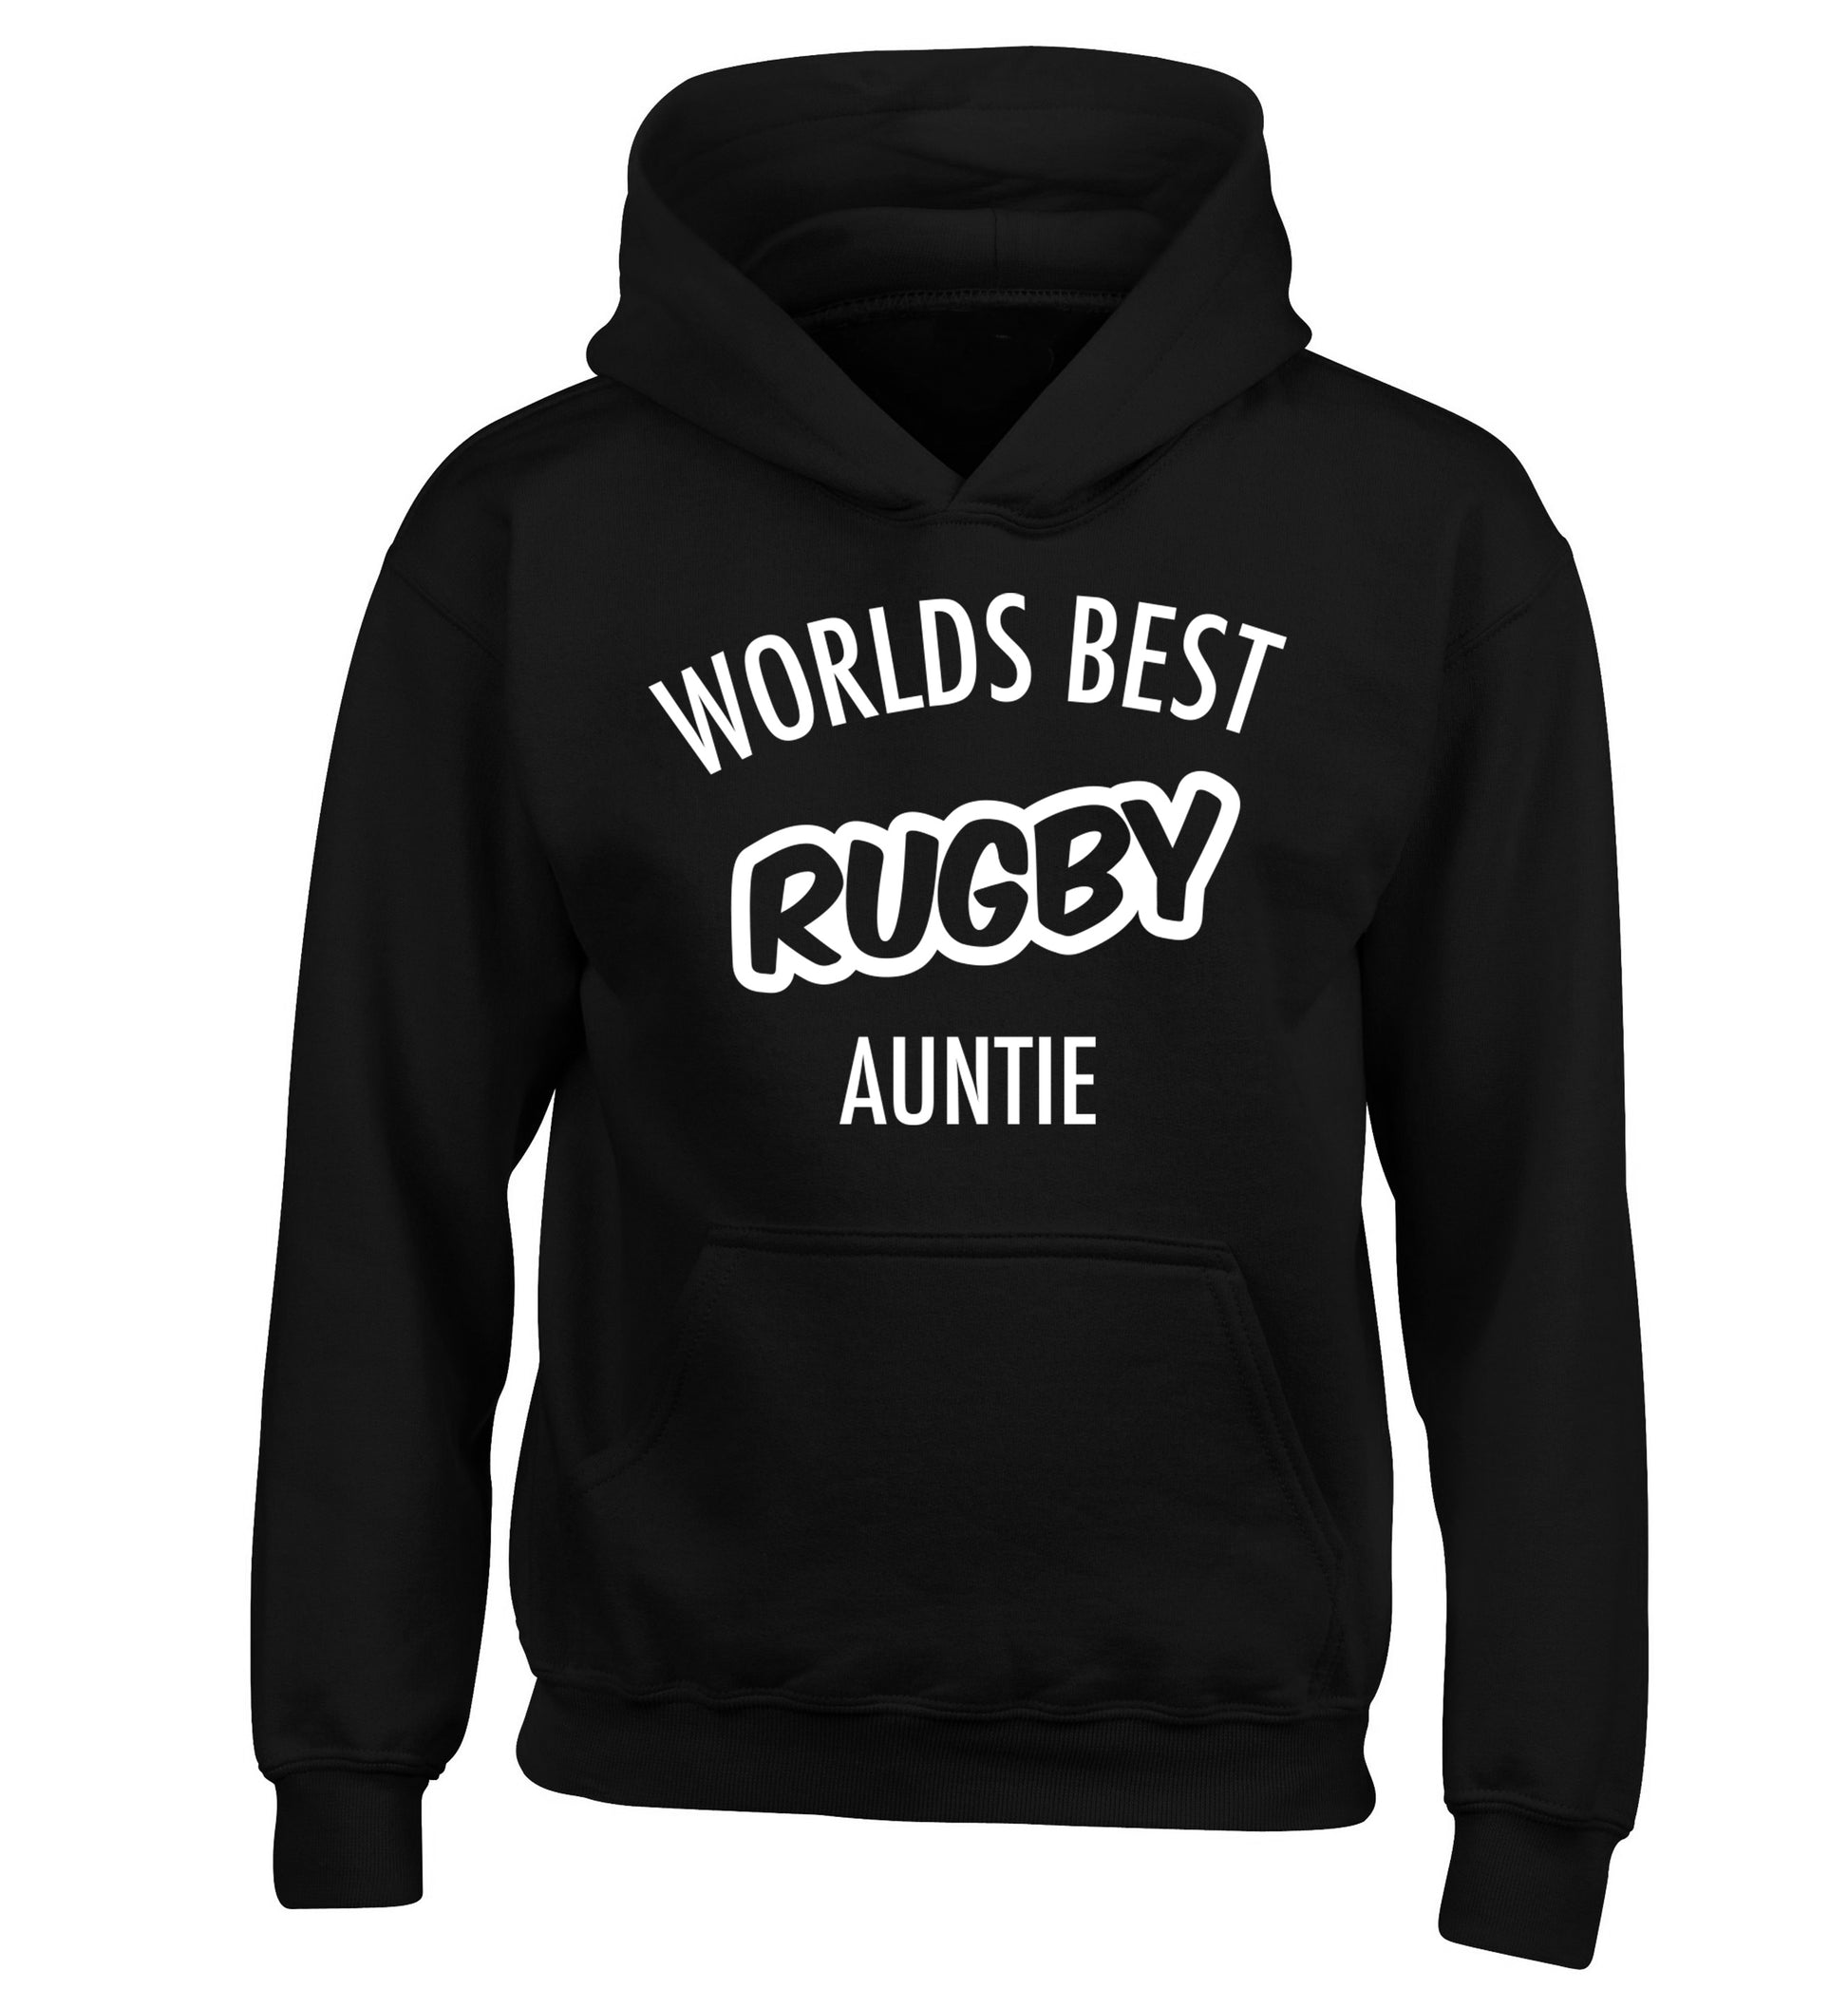 Worlds best rugby auntie children's black hoodie 12-13 Years